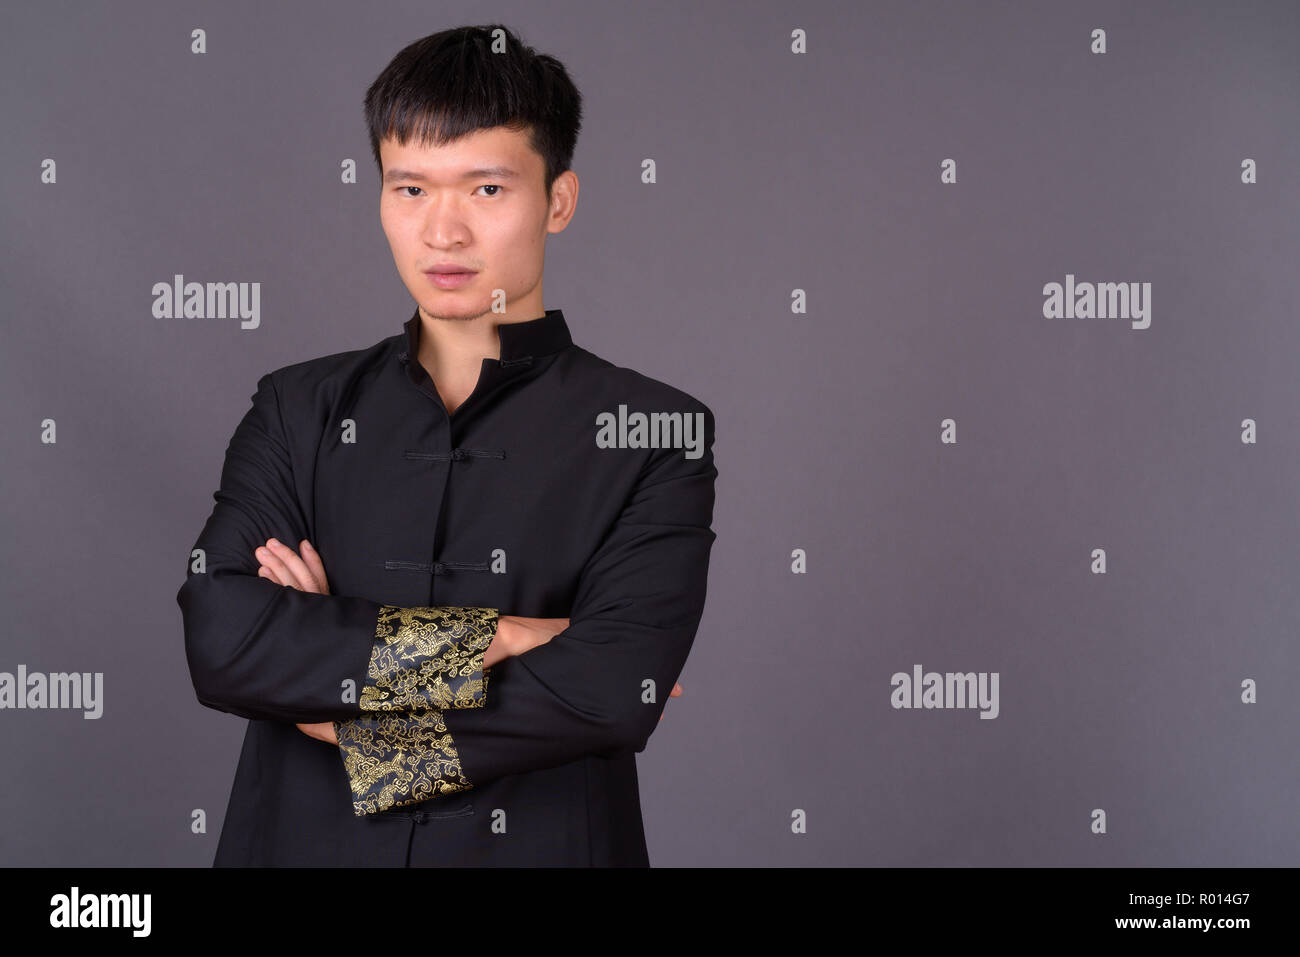 Portrait de jeune homme d'origine chinoise contre l'arrière-plan gris Banque D'Images